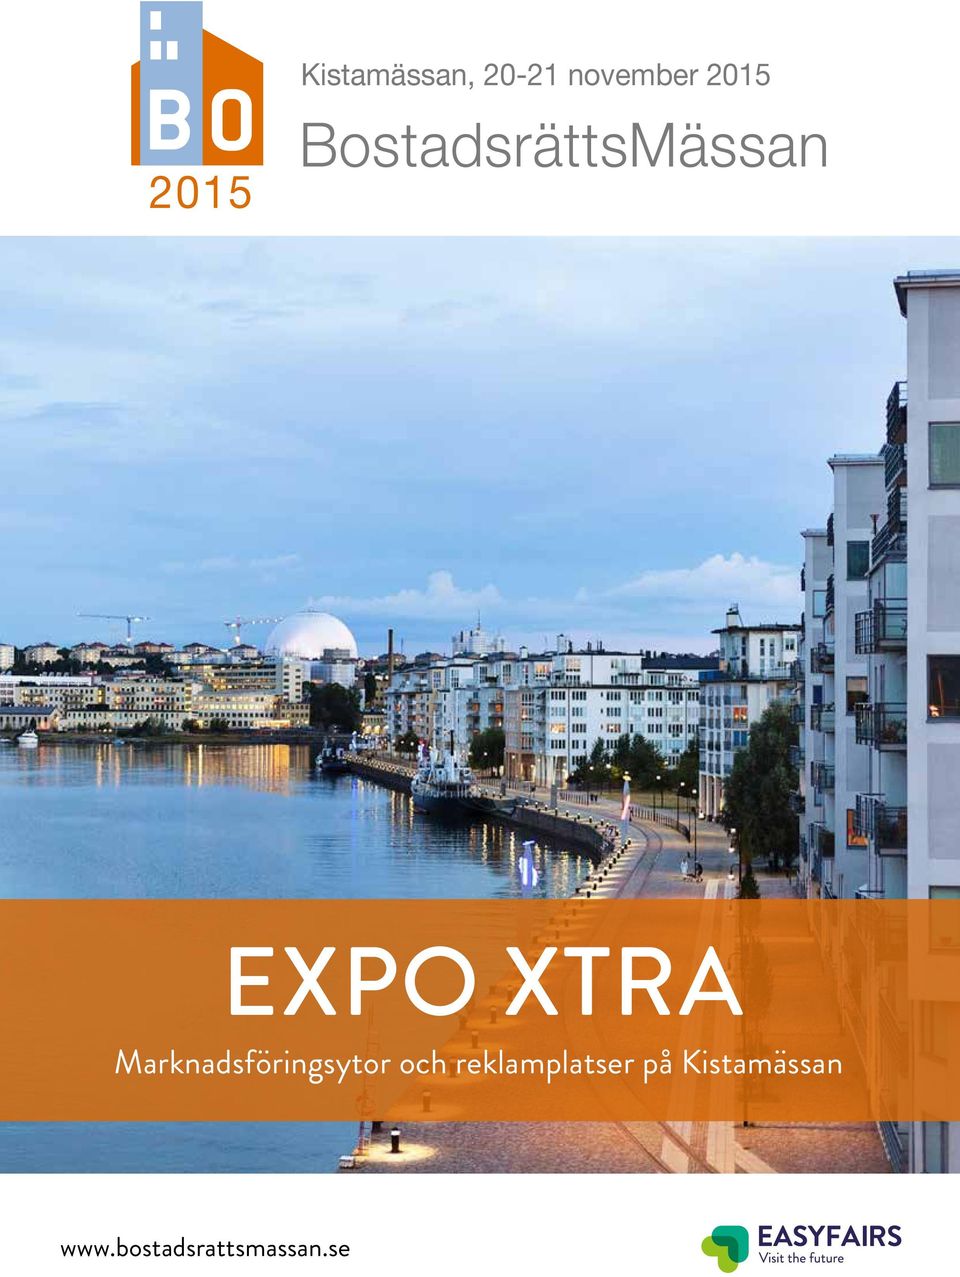 BostadsrättsMässan EXPO XTRA